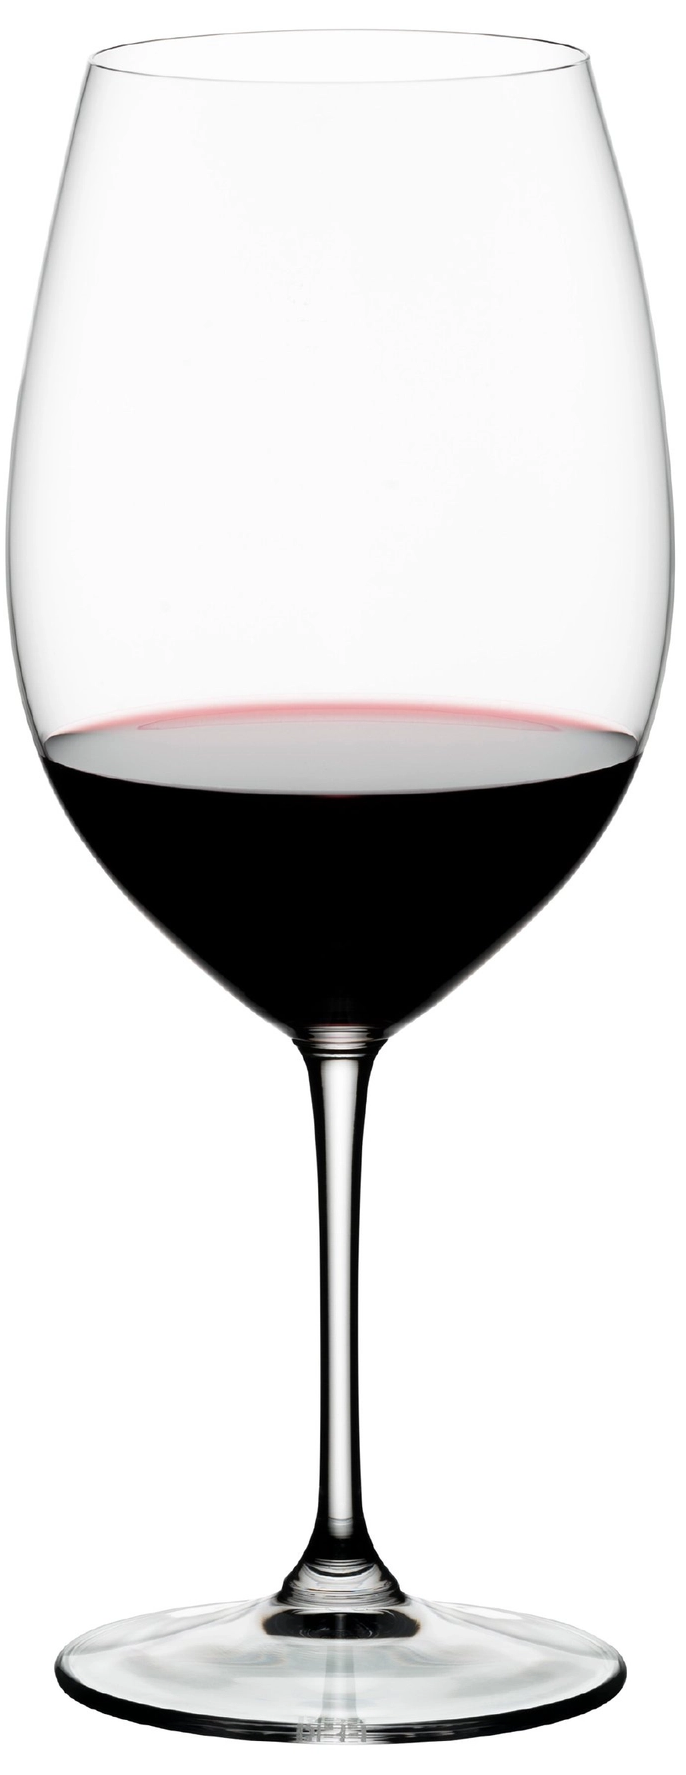 Riedel Degustazione Red Wine Glass (RESTAURANT ONLY - NOT RETAIL